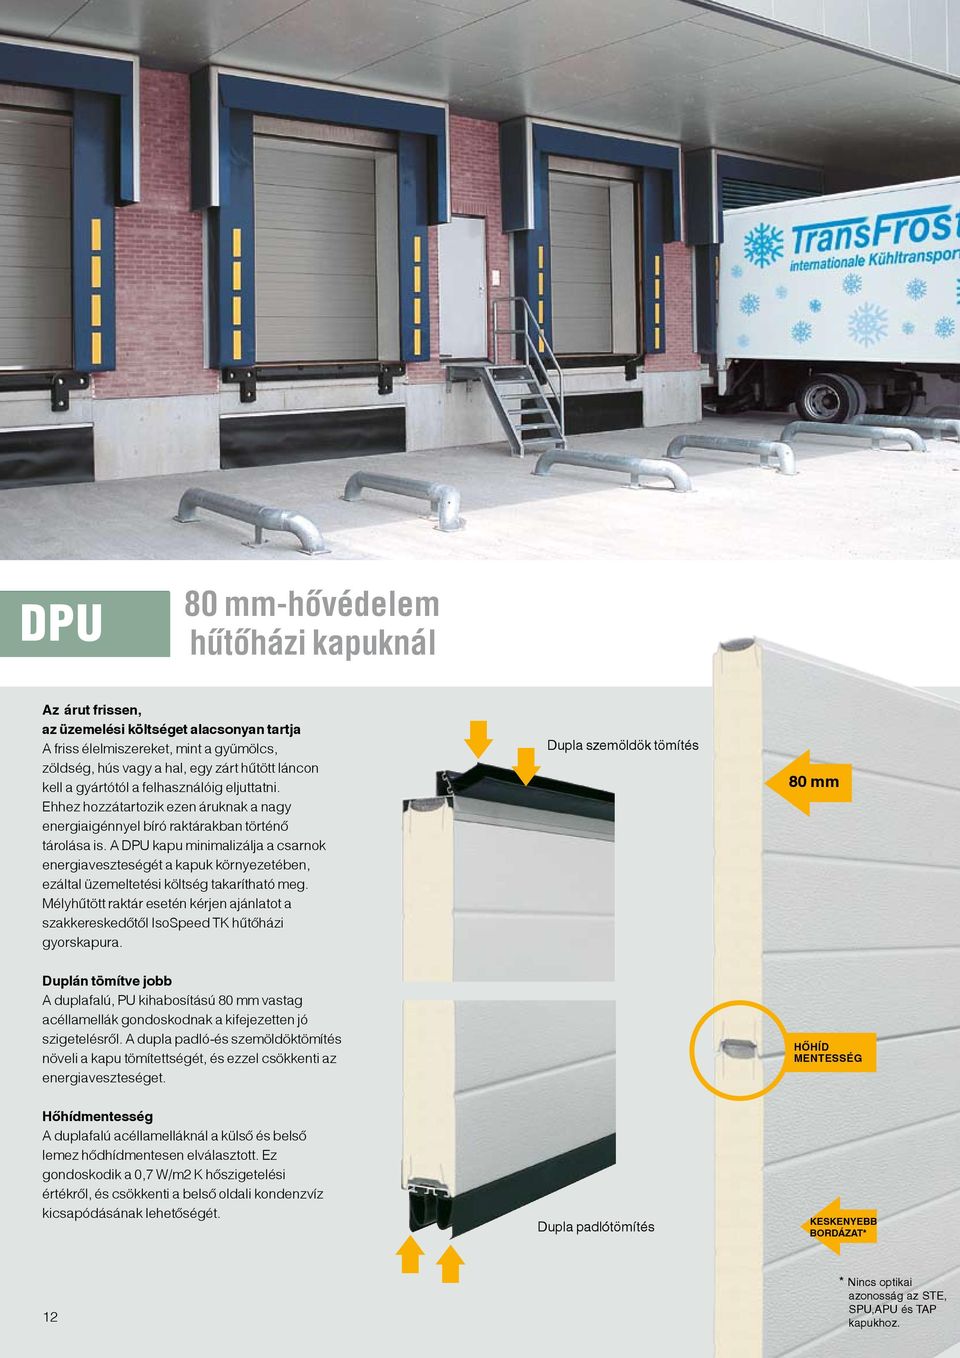 A DPU kapu minimalizálja a csarnok energiaveszteségét a kapuk környezetében, ezáltal üzemeltetési költség takarítható meg.